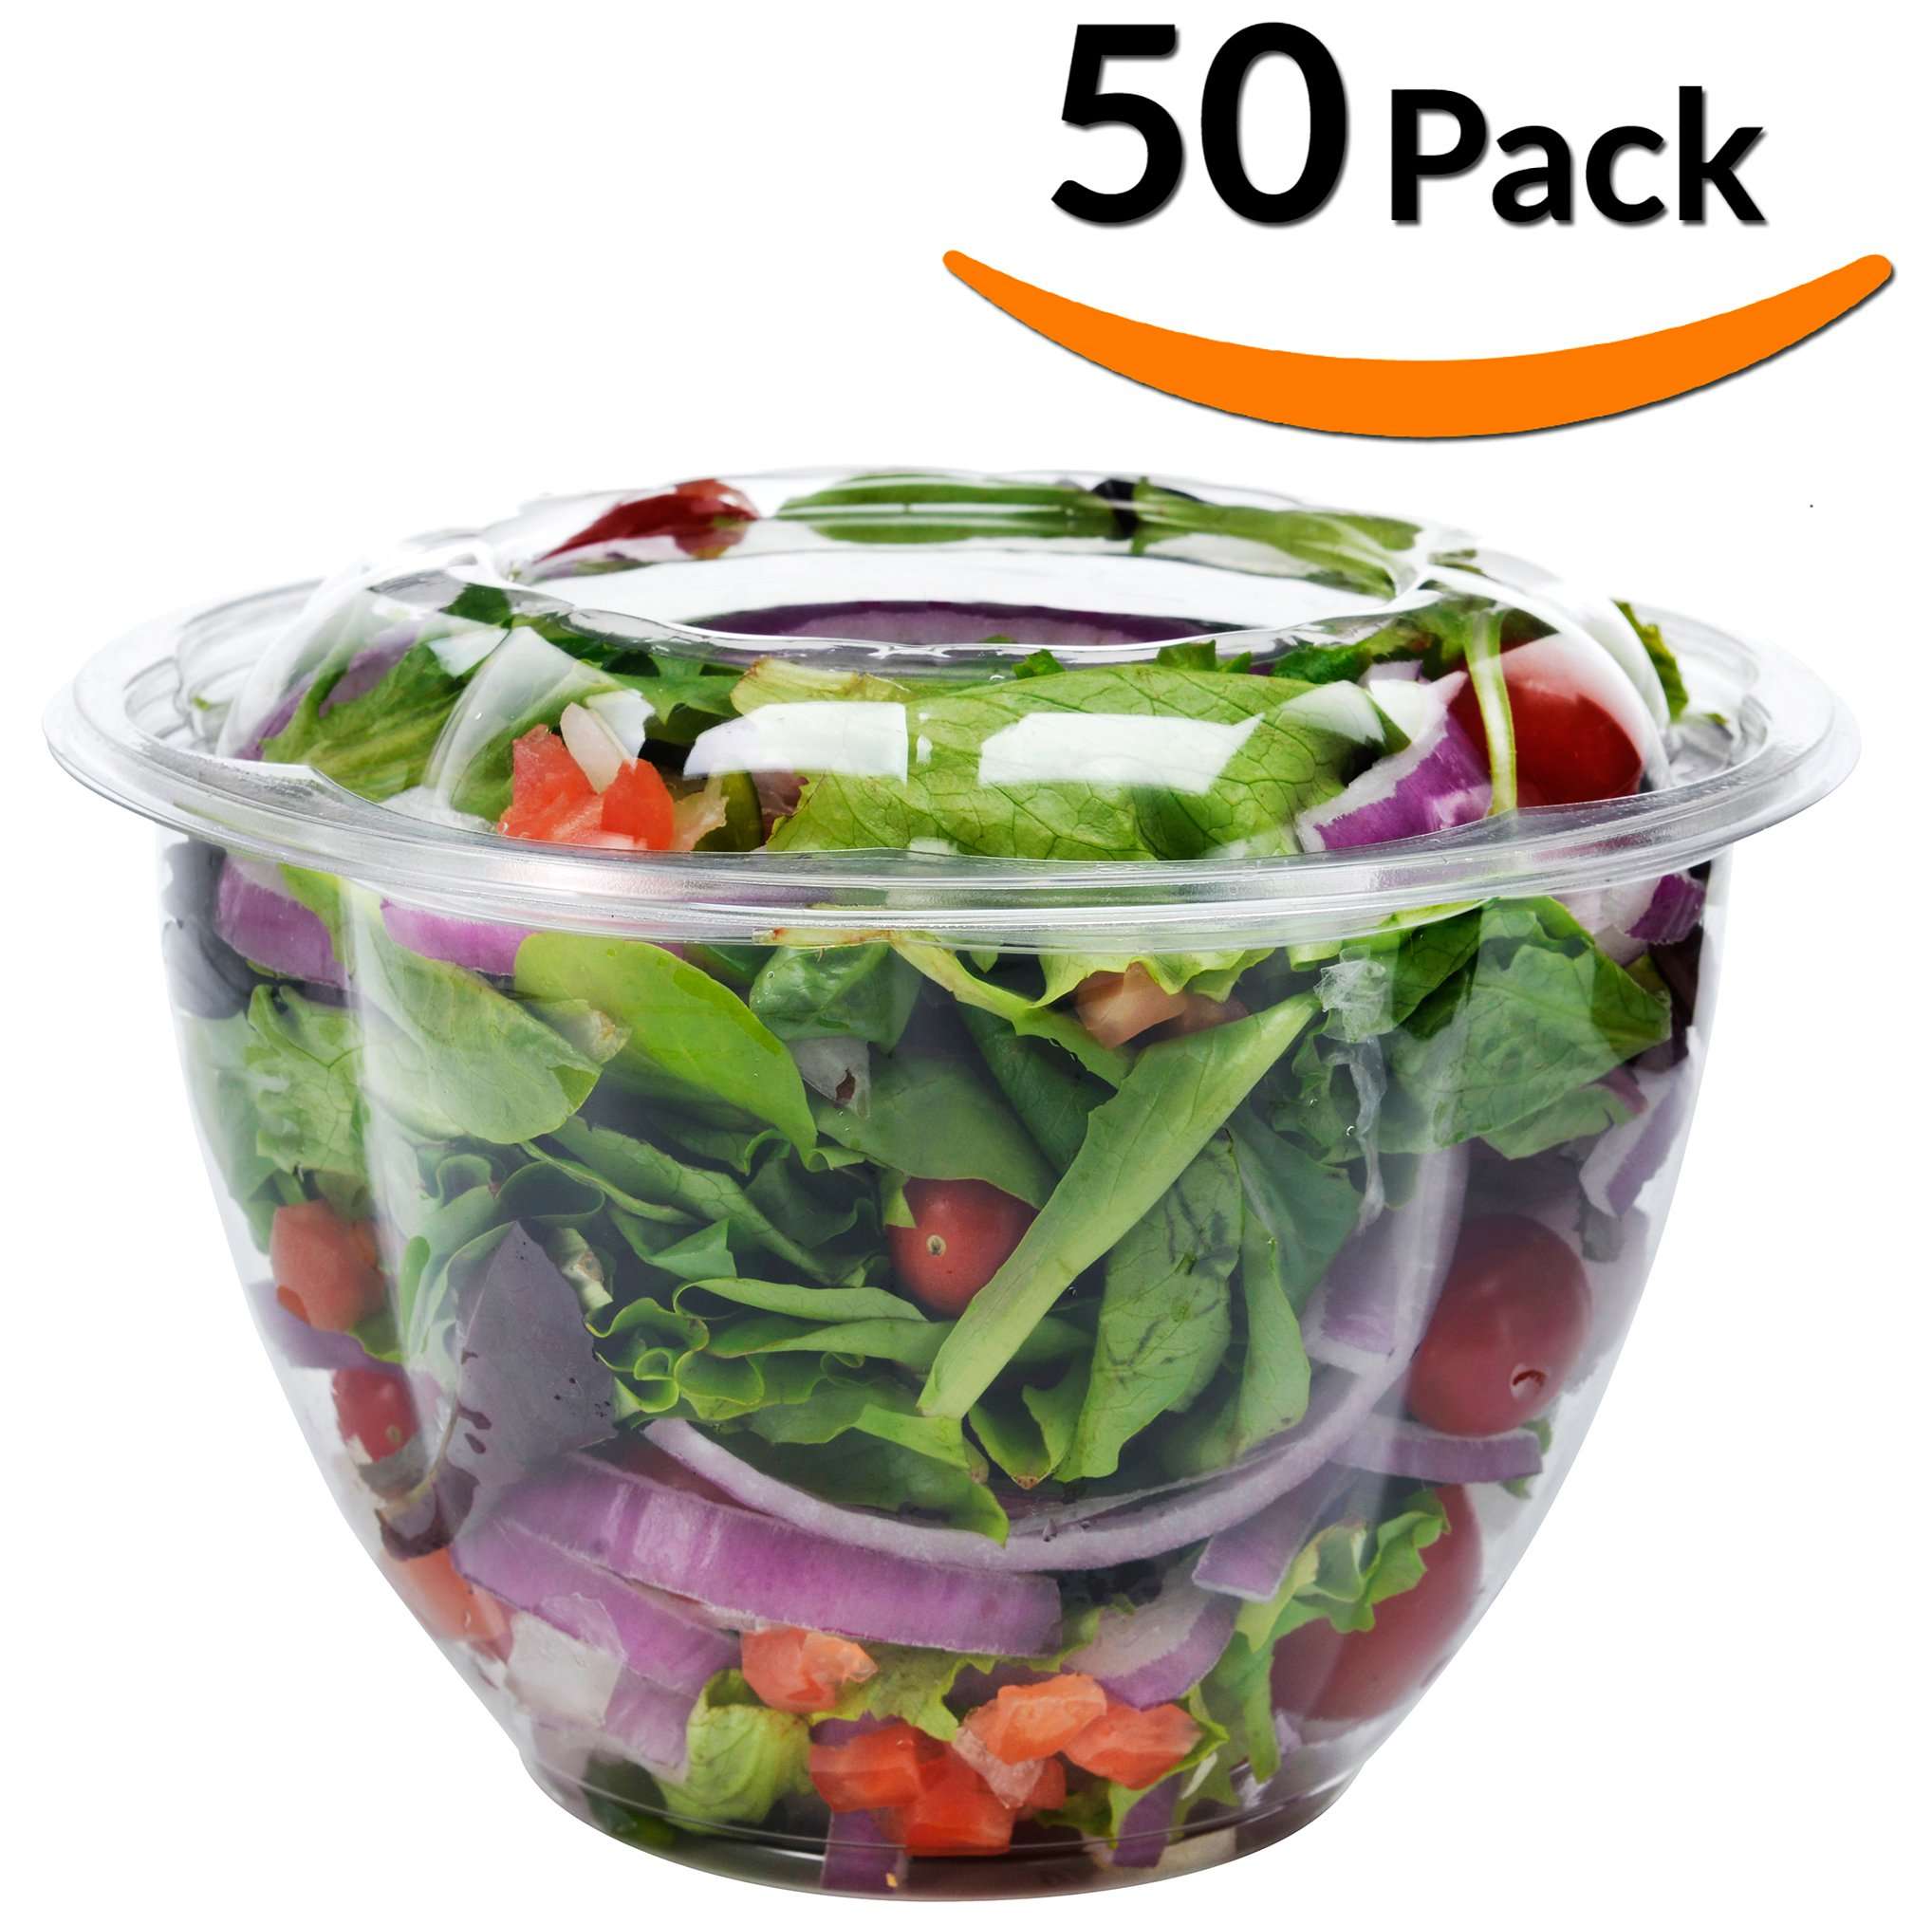 Amazon.com: DOBI Salad To